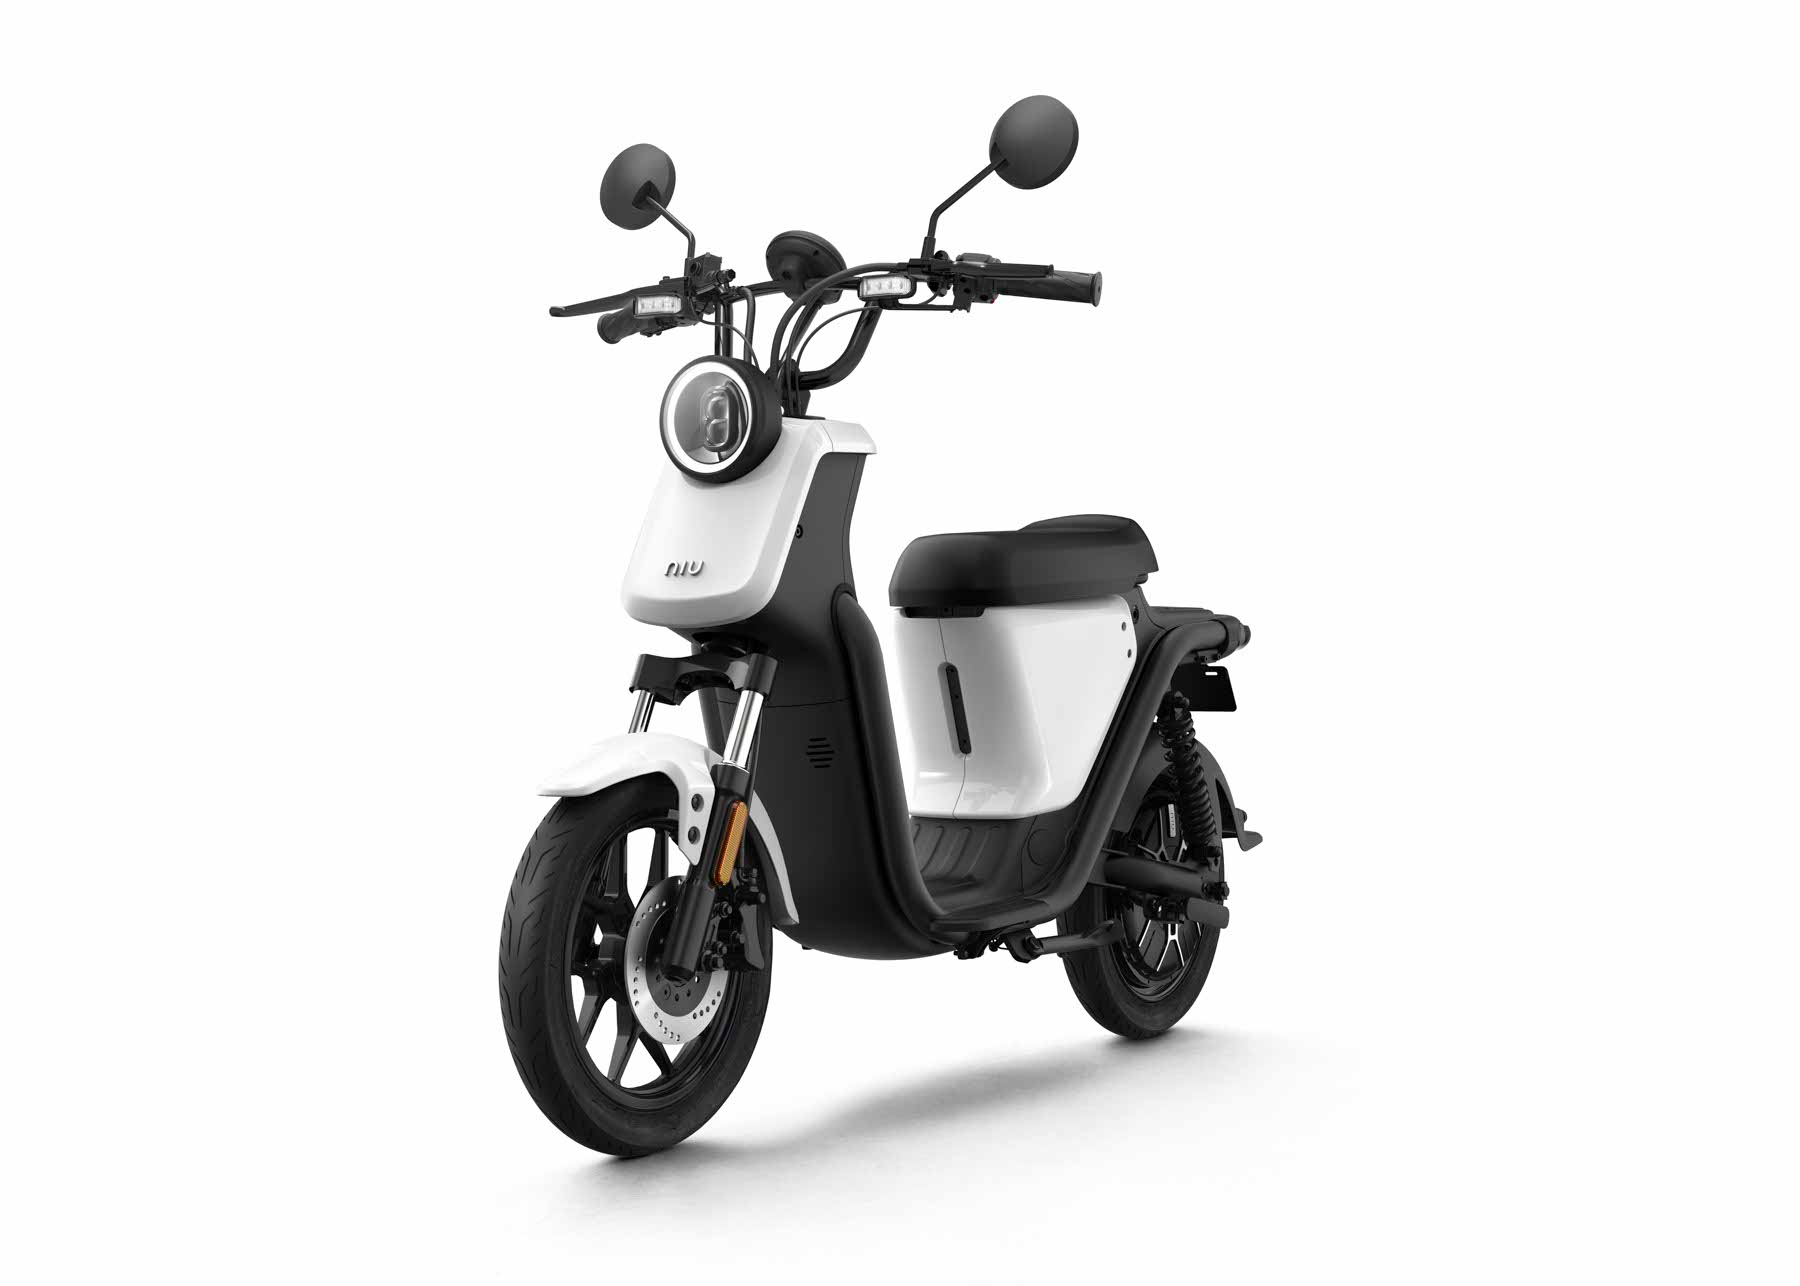 massefylde Betaling Intuition NIU El scooter - Cykelbutikken.eu